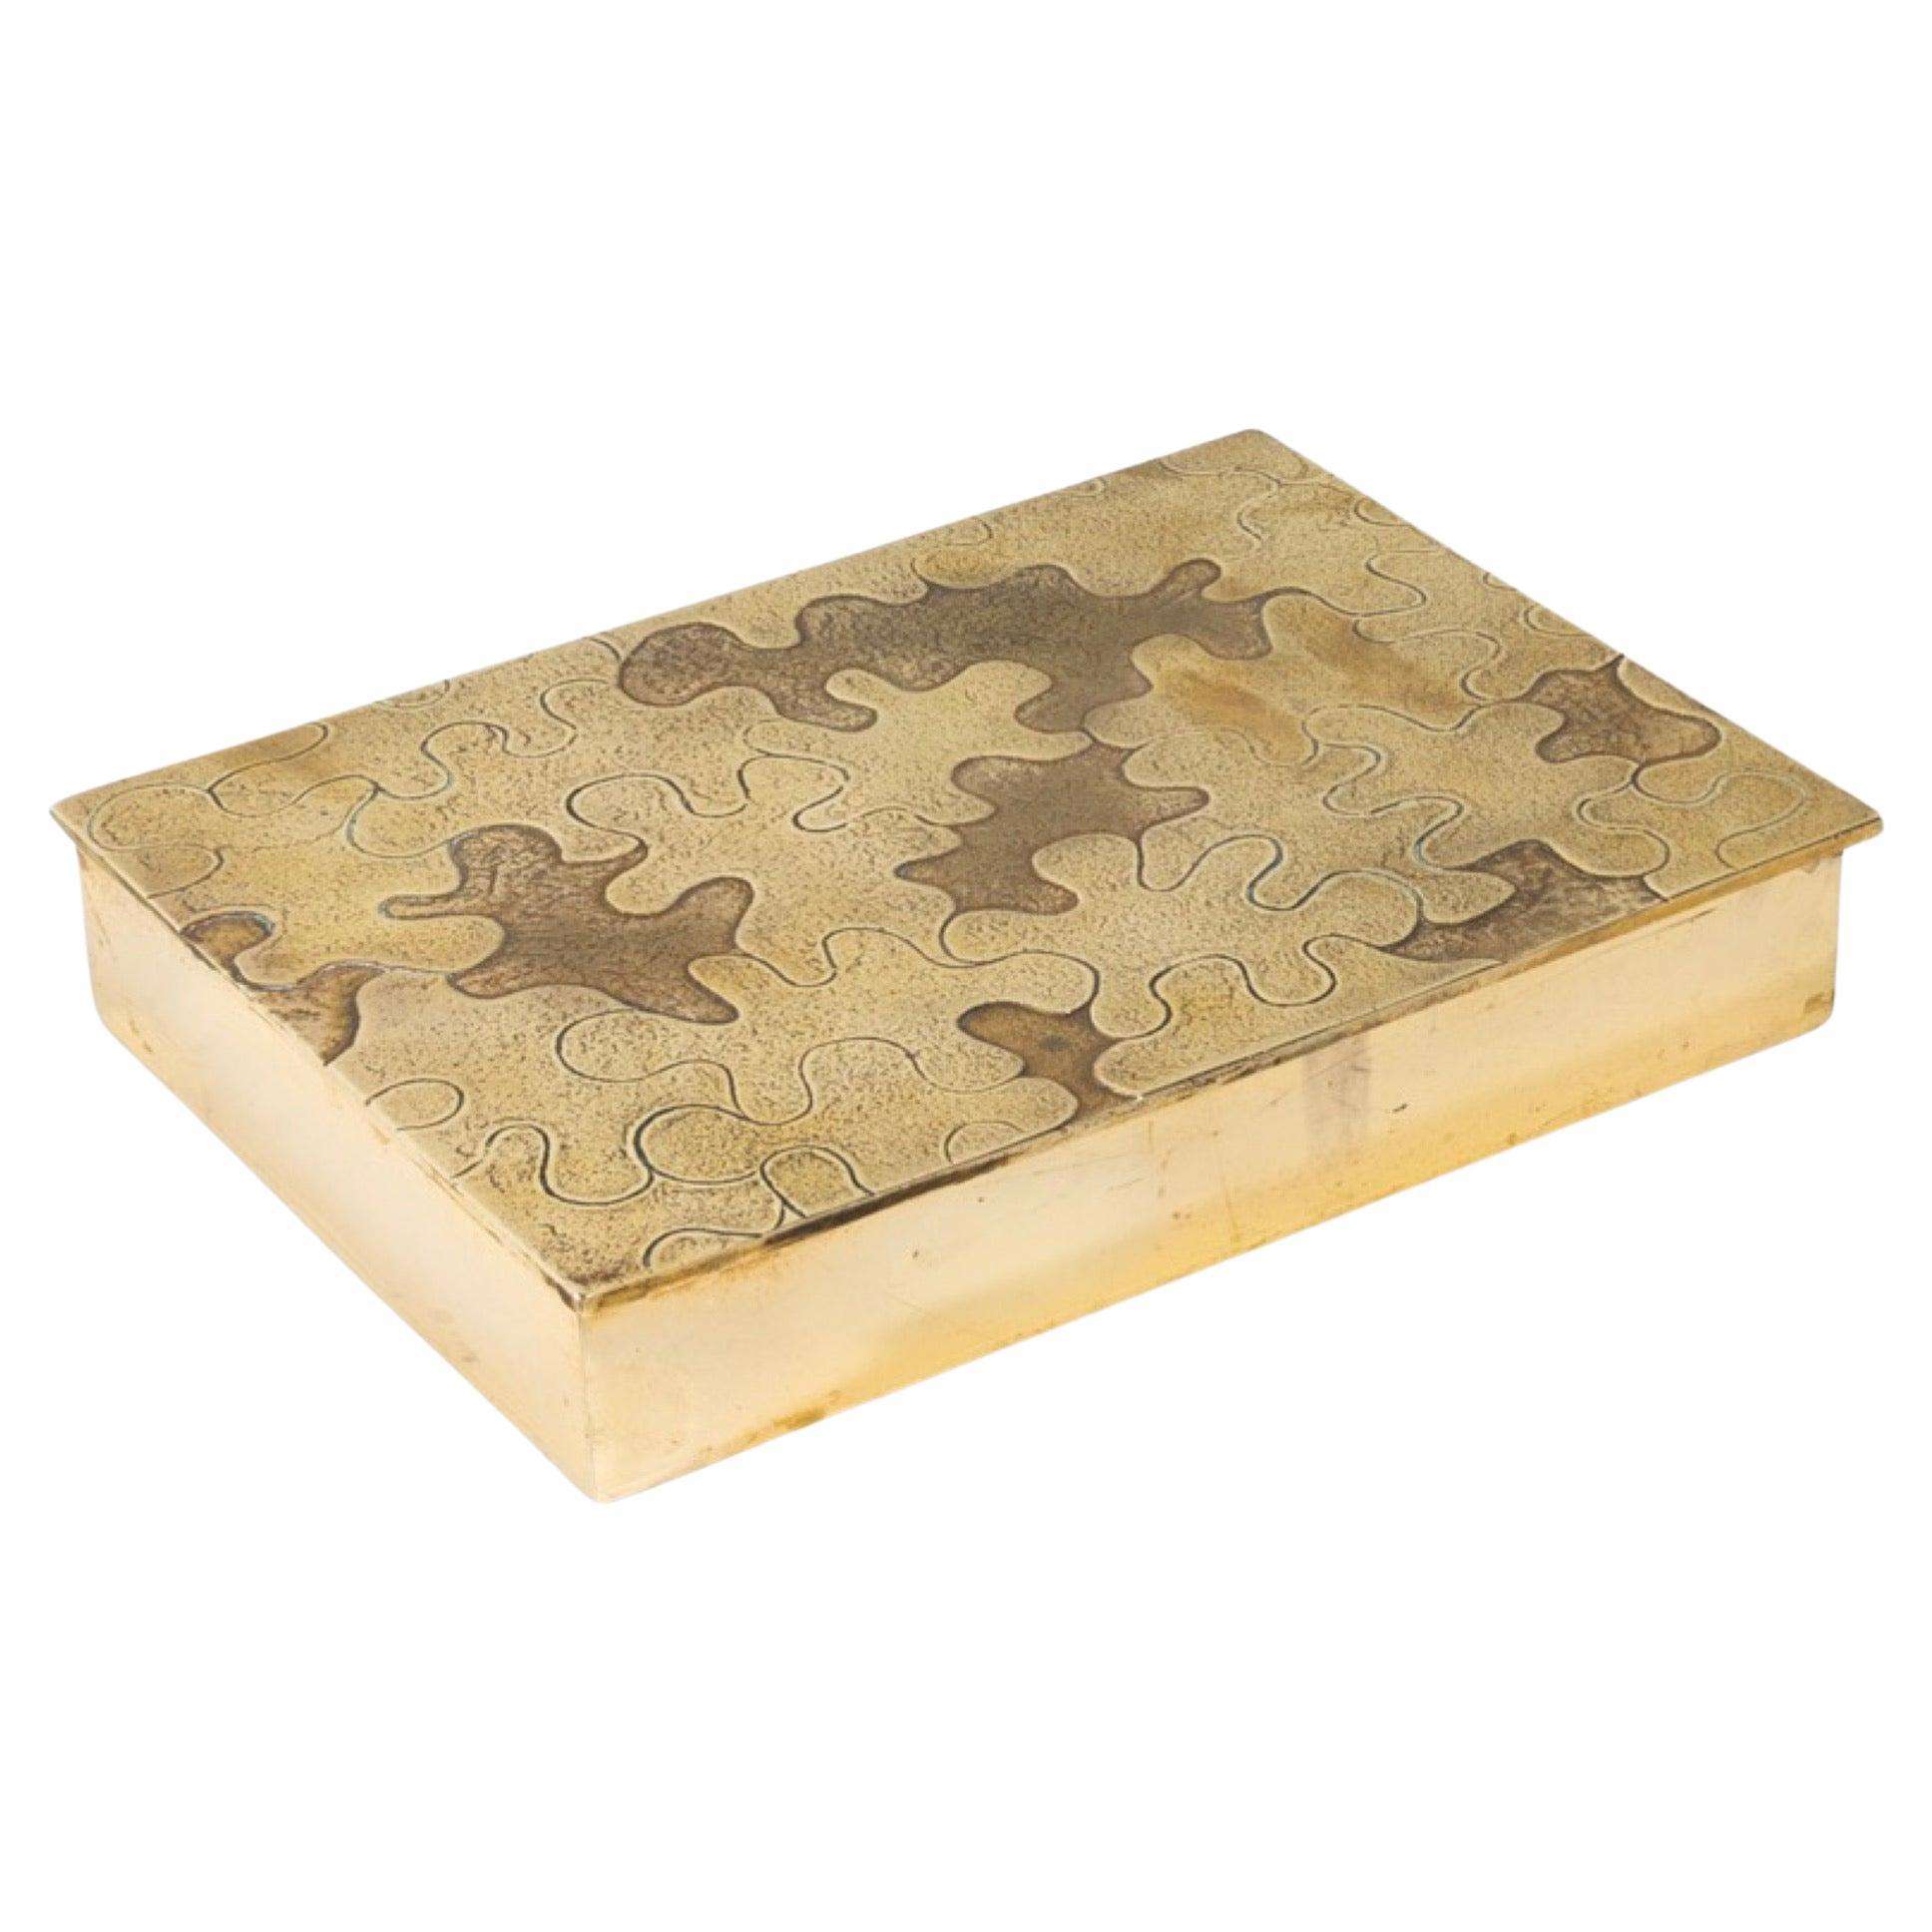 Puzzle de Line Vautrin - Caja de bronce dorado